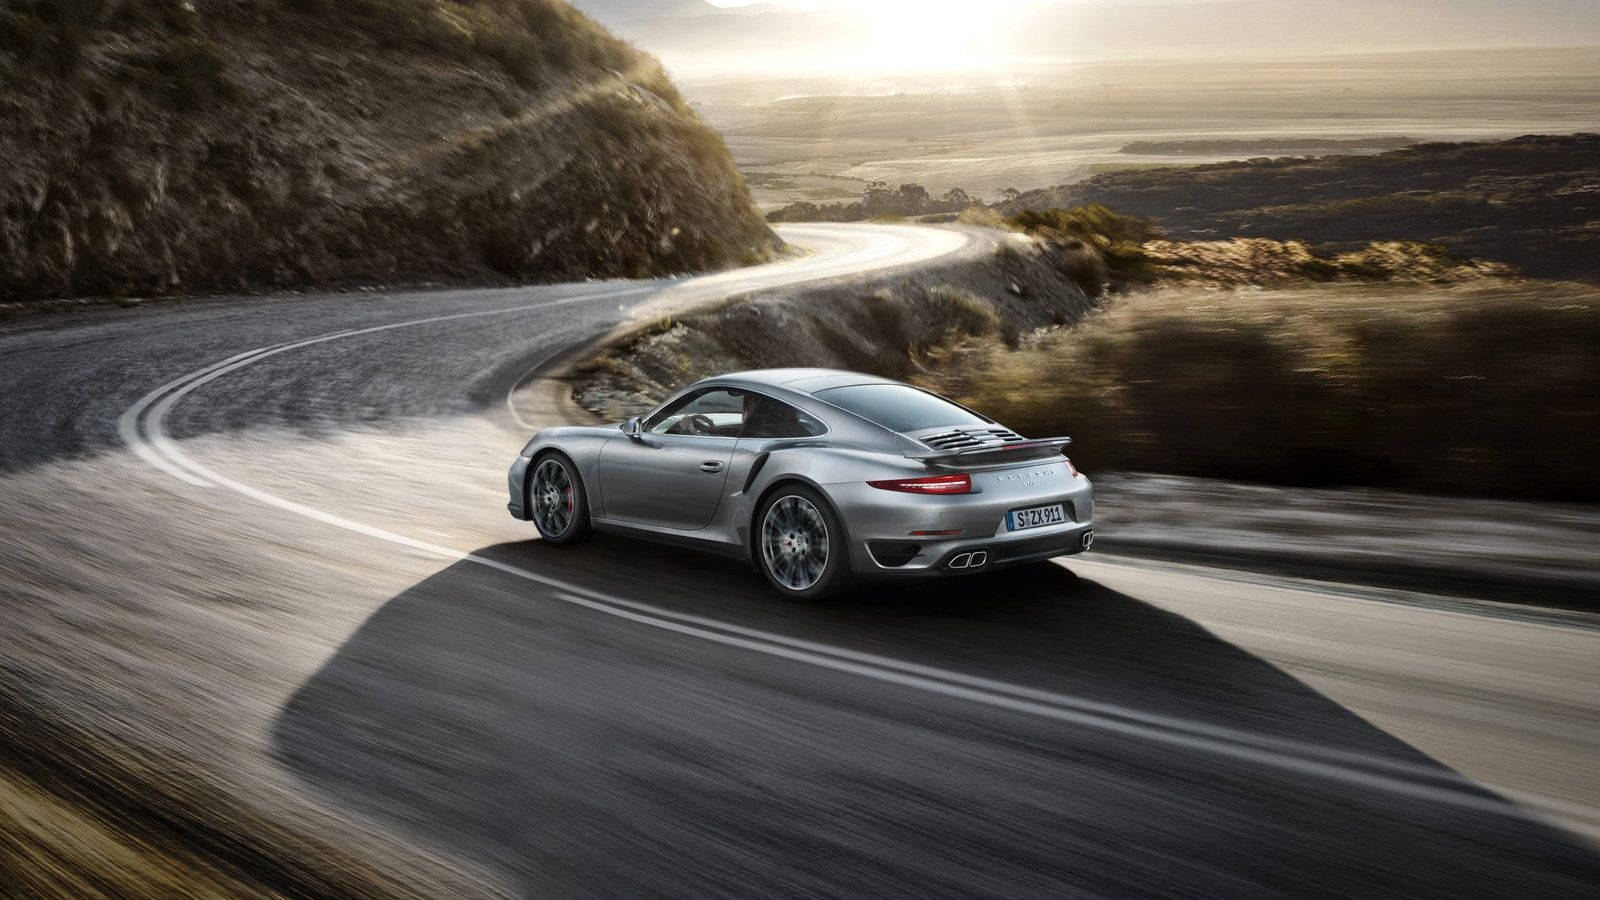 Luxurious Porsche 911 cruising on the open road Wallpaper